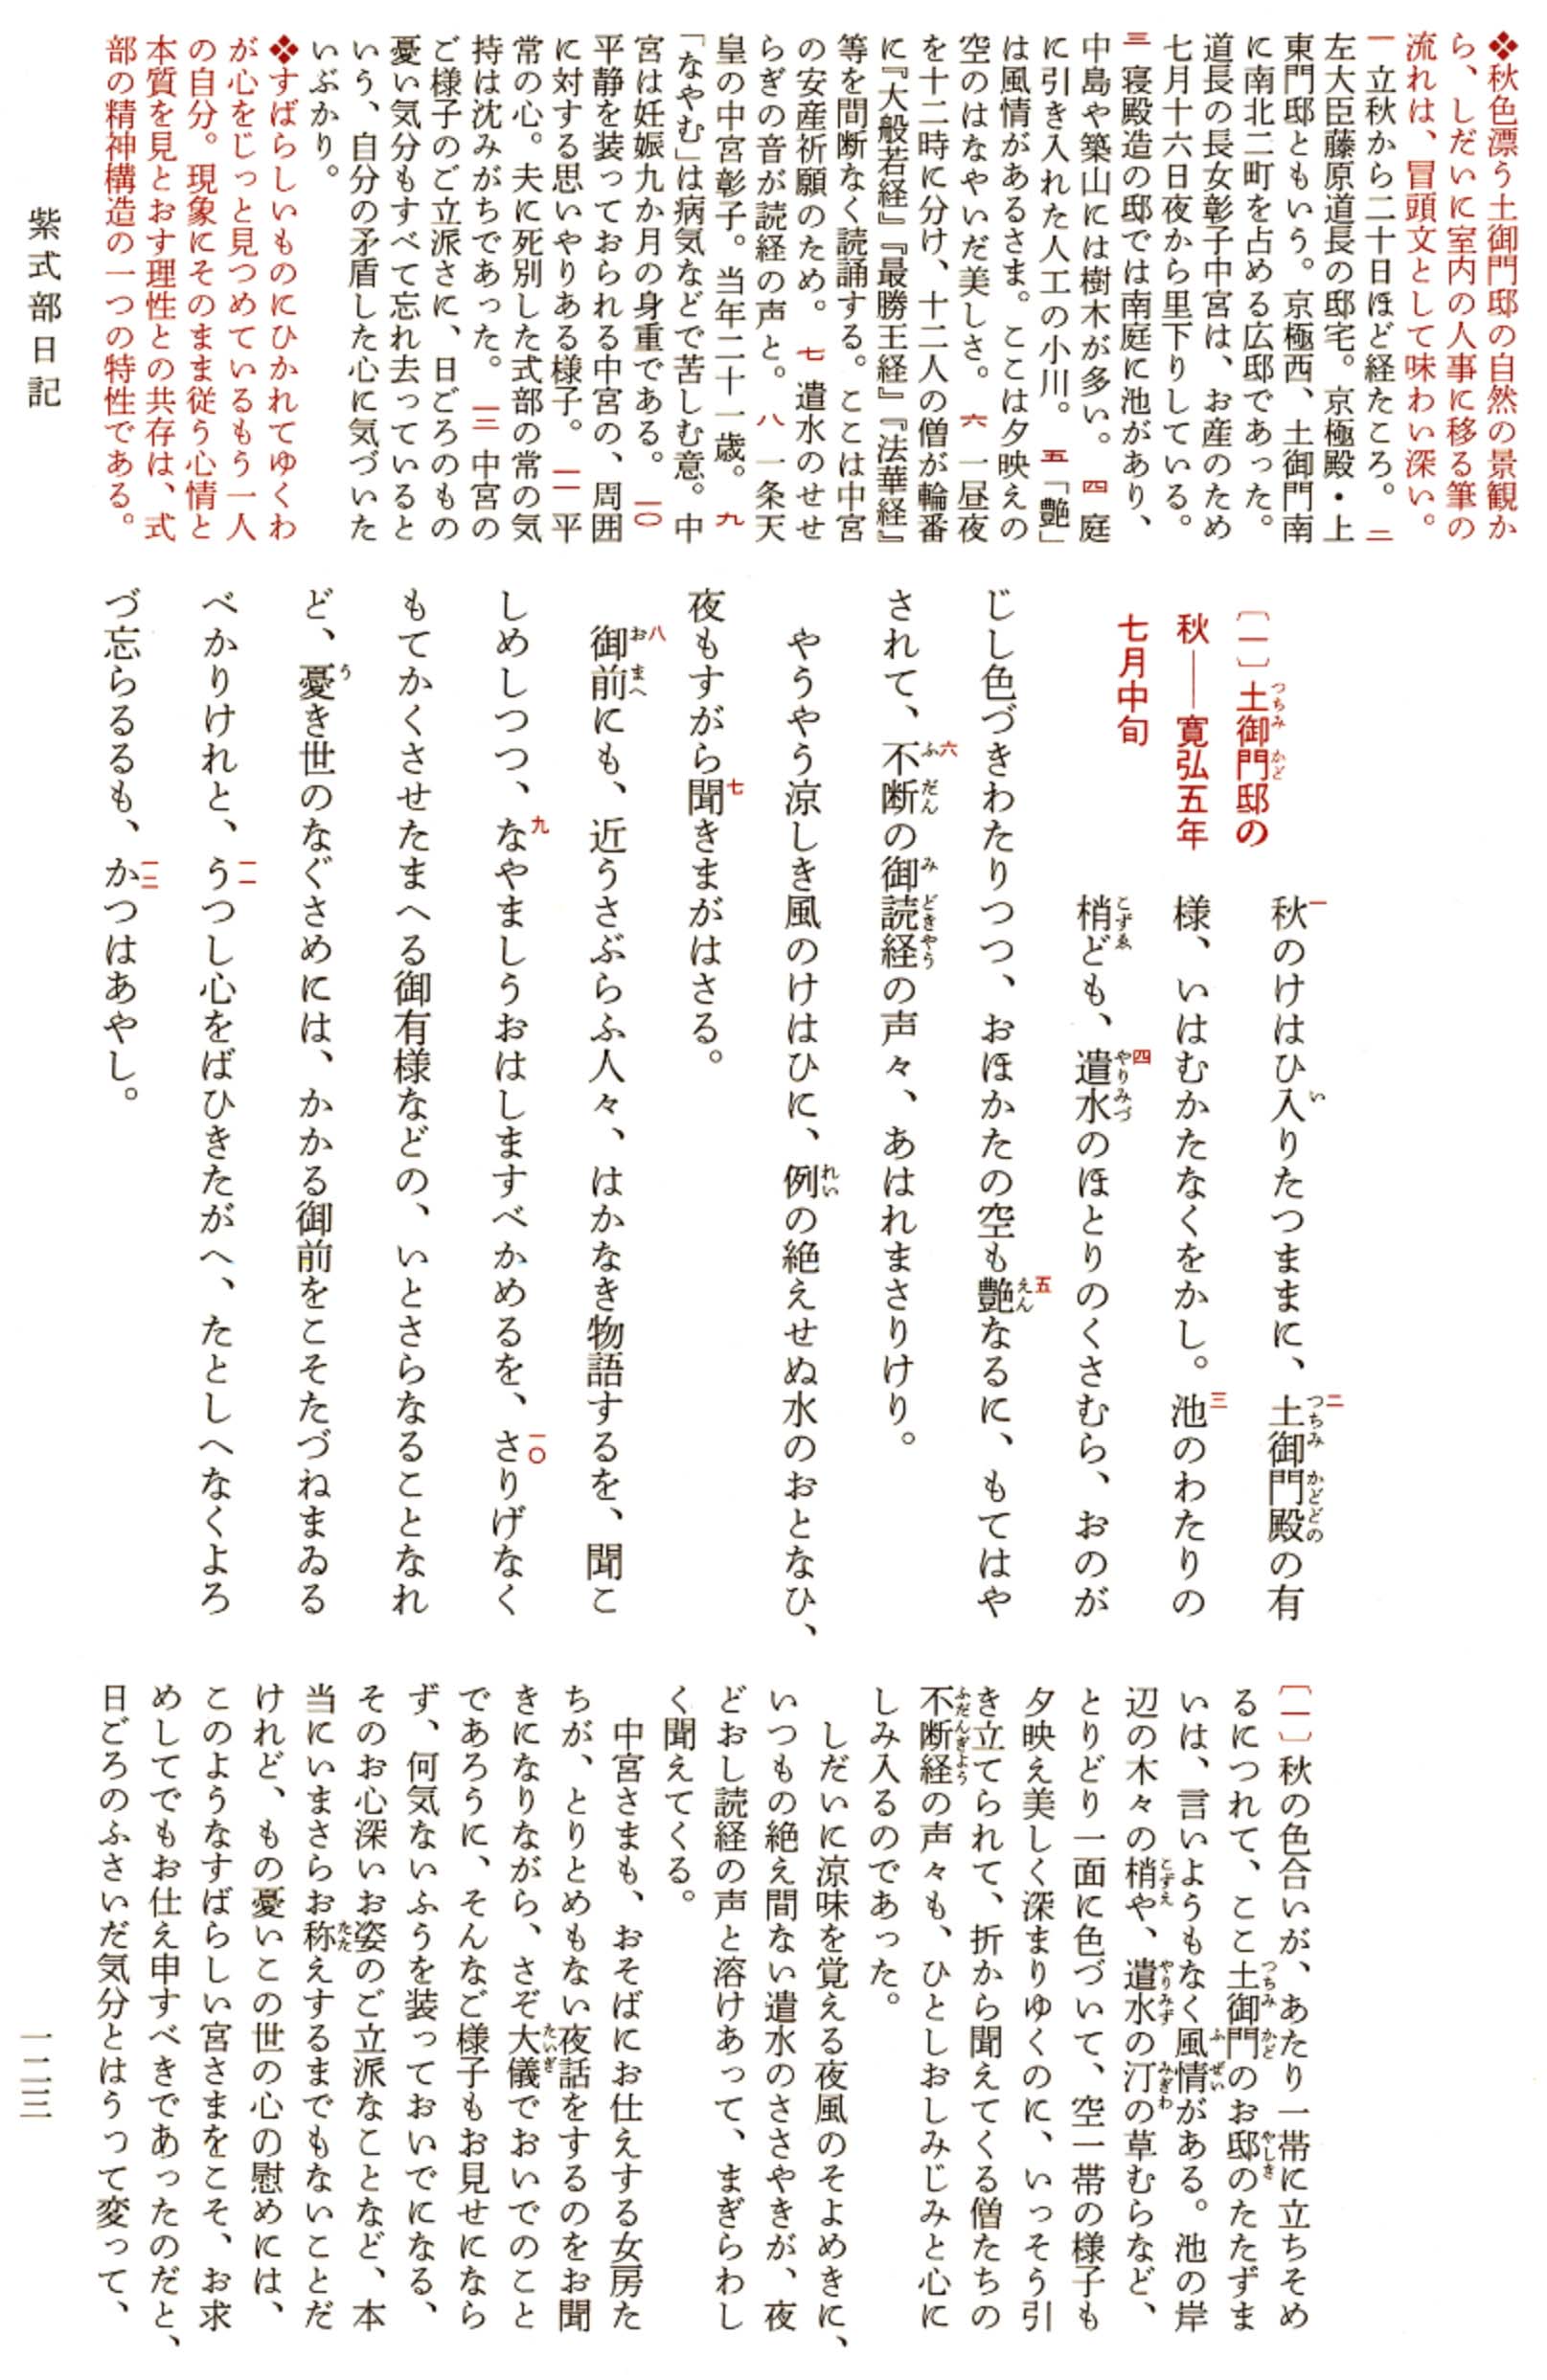 紫式部日記 日本古典文学全集 ジャパンナレッジ